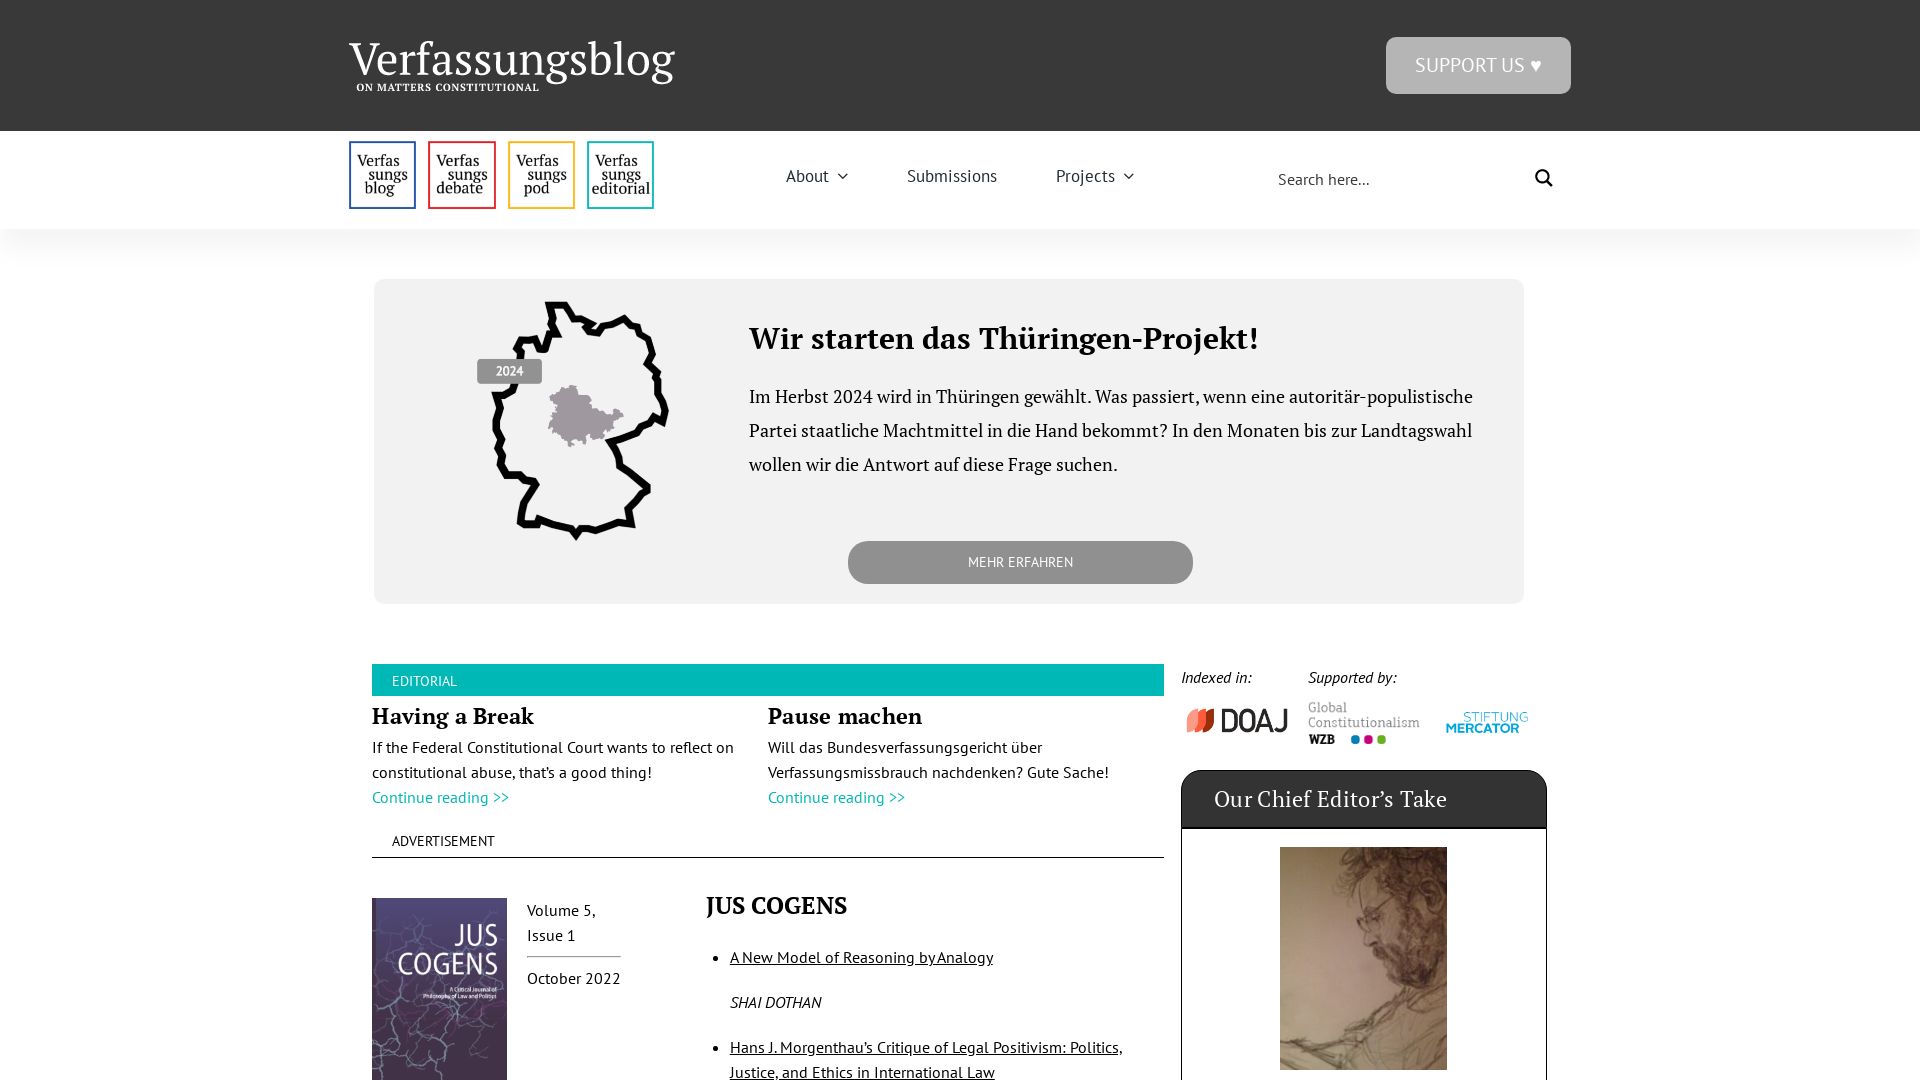 网站状态 verfassungsblog.de 是  在线的